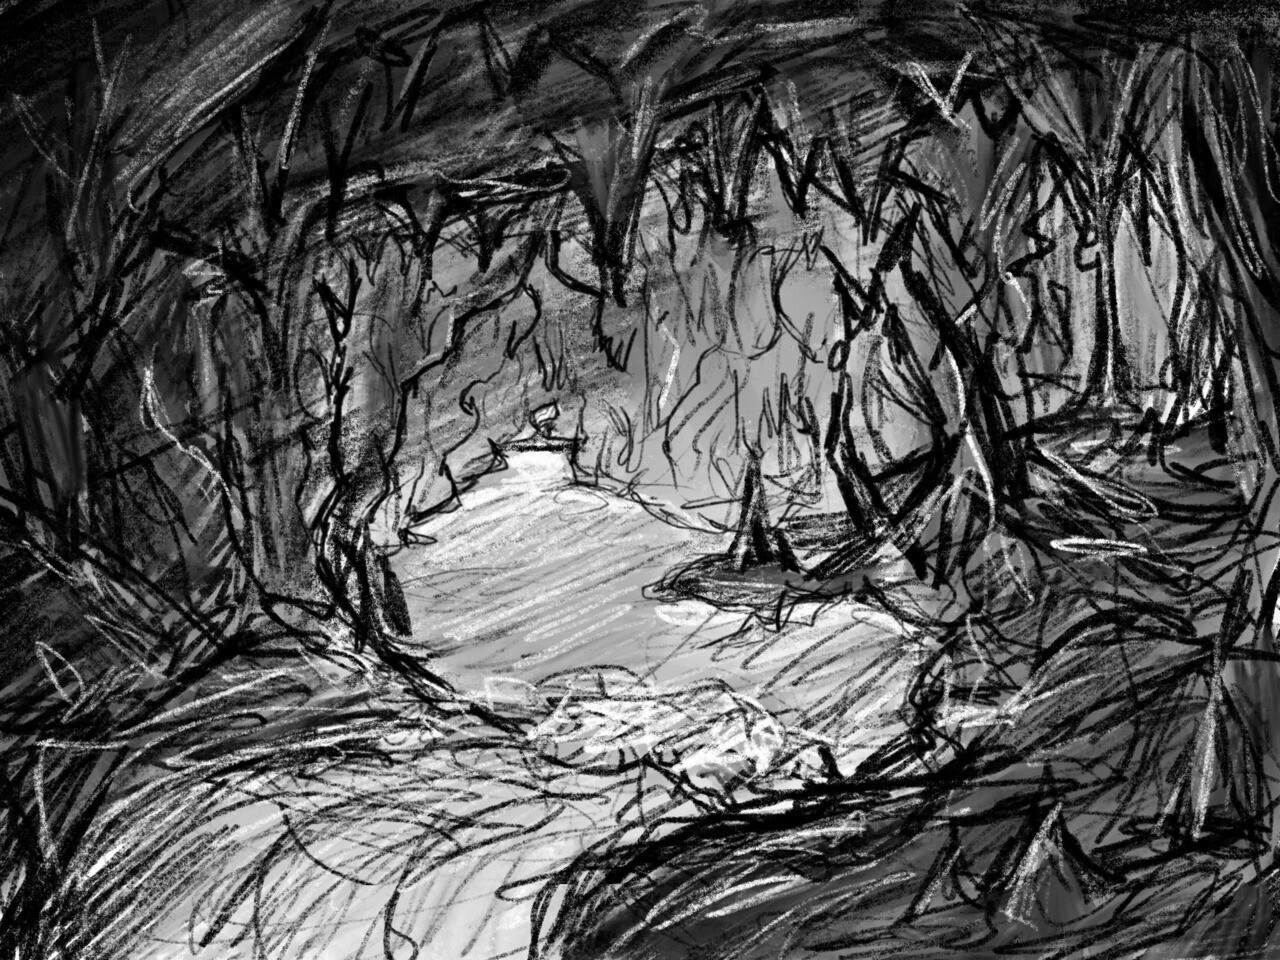 ArtStation - Cave interior sketch